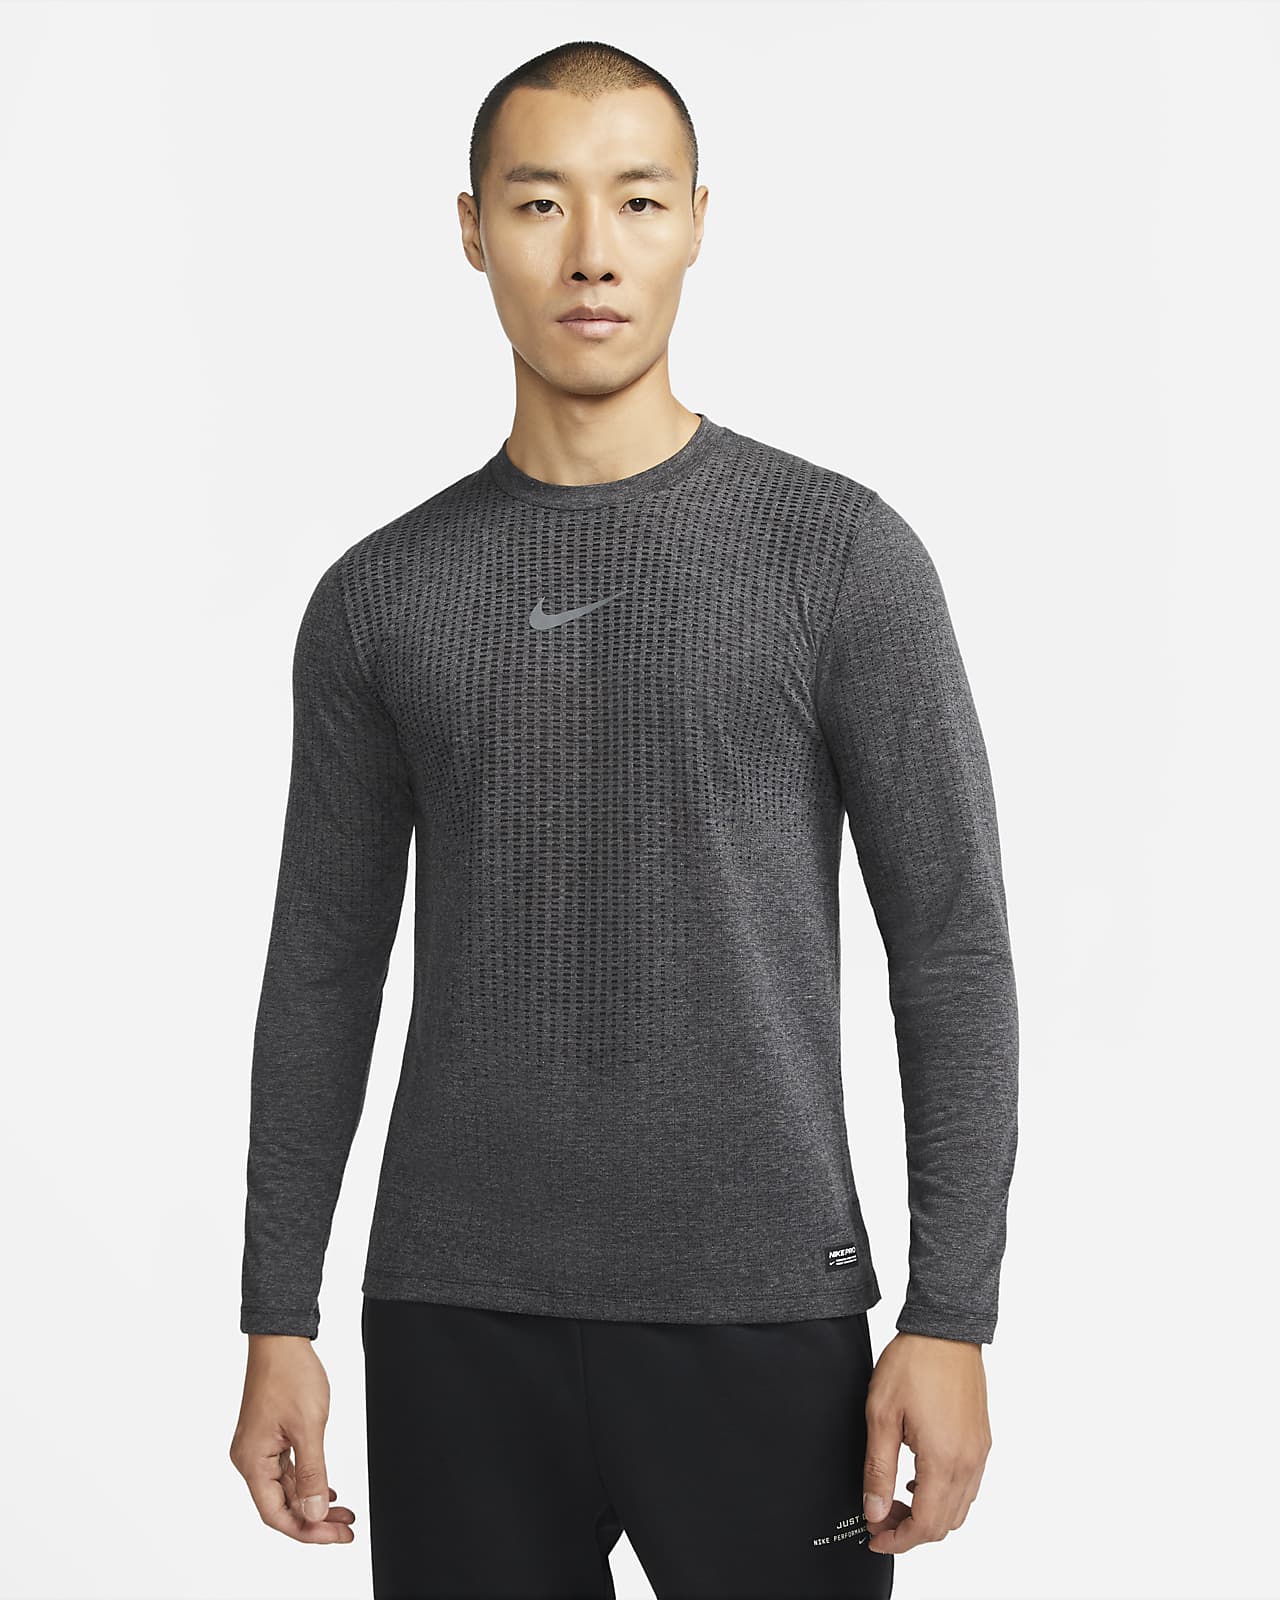 Nike Pro Dri-FIT ADV Men's Long-Sleeve Top